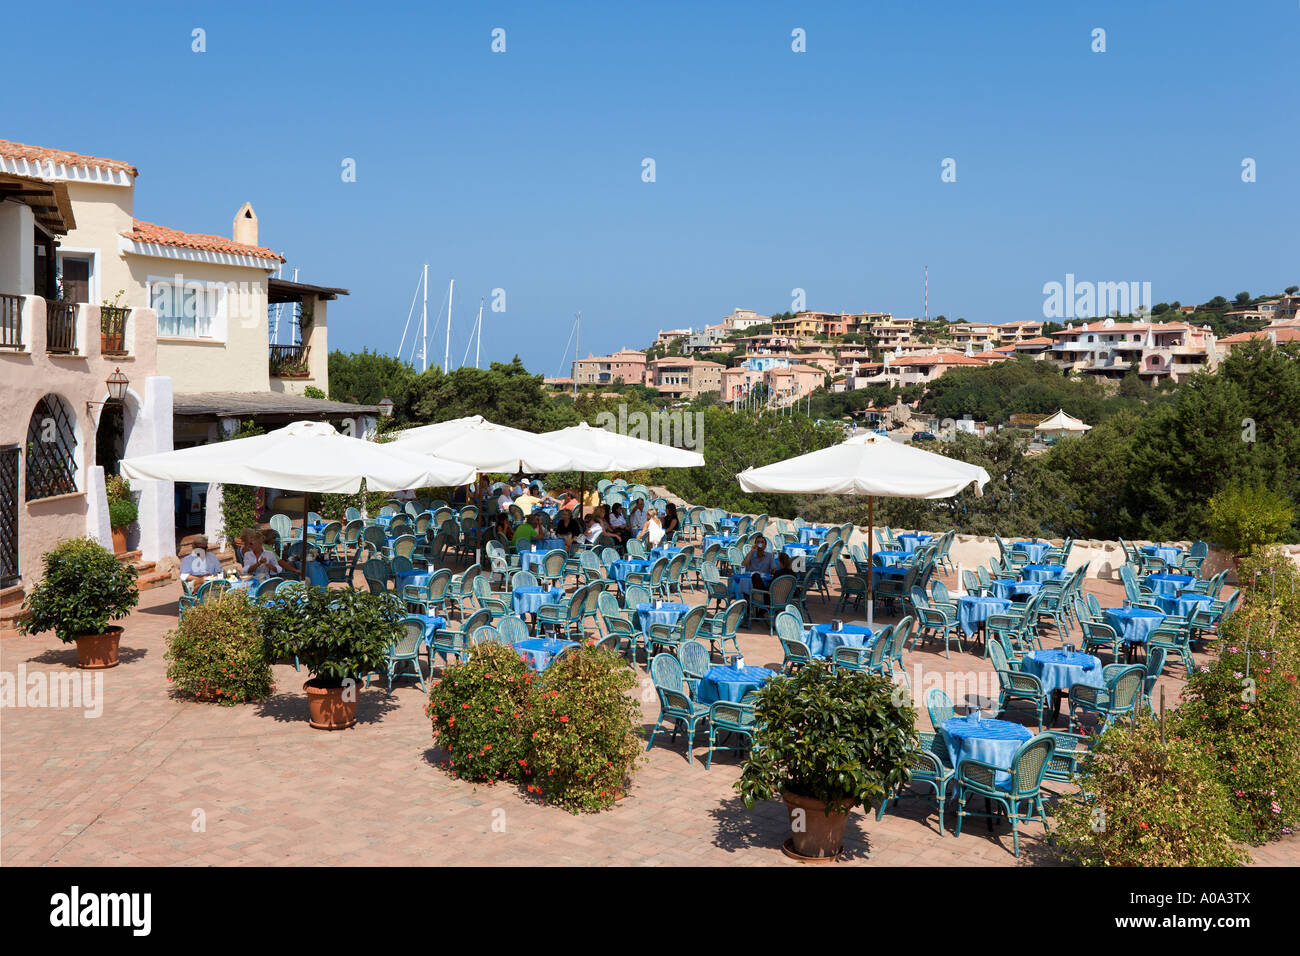 Restaurant in the resort centre, La Piazza, Porto Cervo, Costa Smeralda, Sardinia, Italy Stock Photo